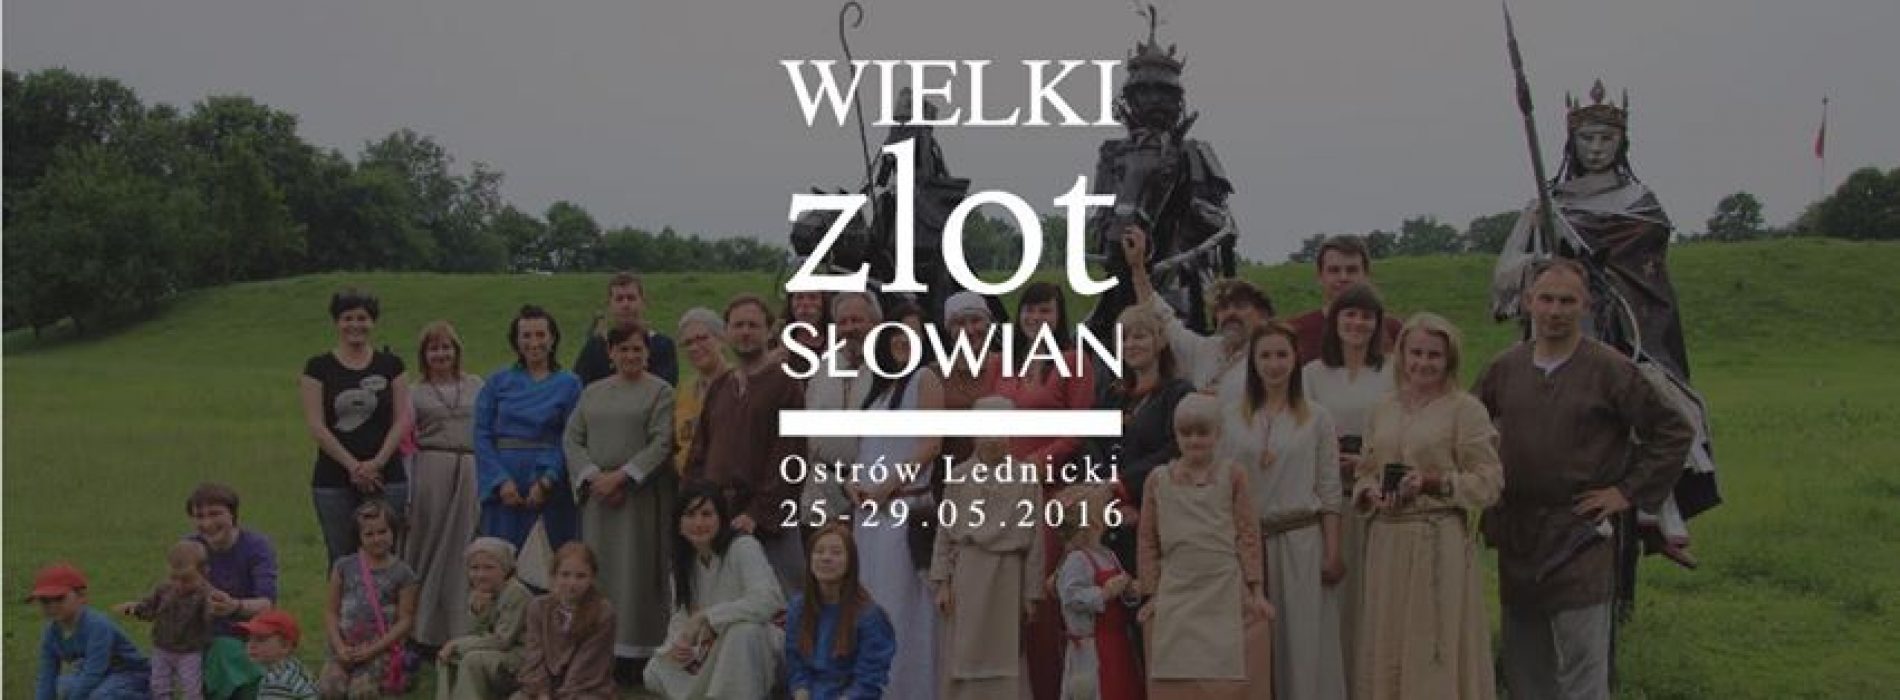 Wielki Zlot Słowian do 29 maja na Ostrowie Lednickim